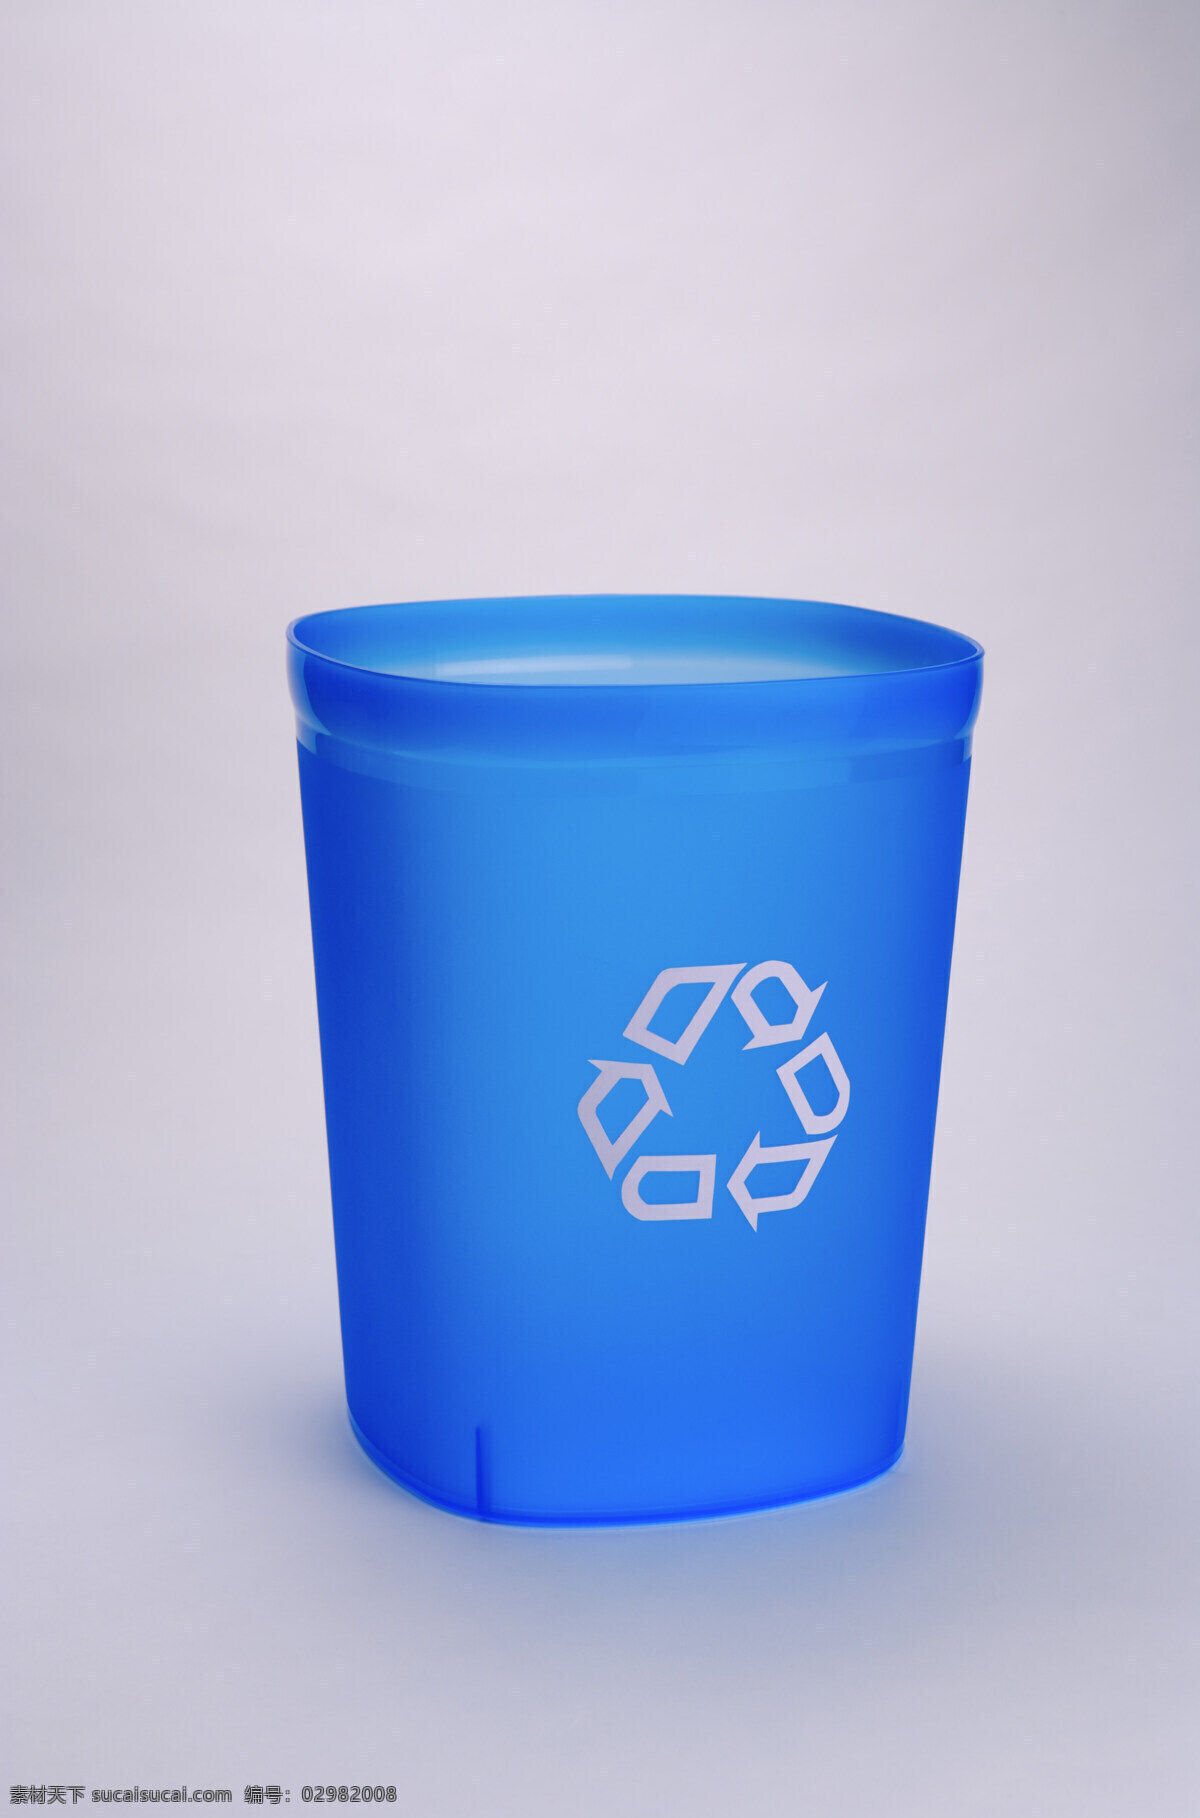 回收 利用 垃圾桶 特写 环保标志 环保 公益广告 回收利用 可利用资源 高清图片 其他类别 生活百科